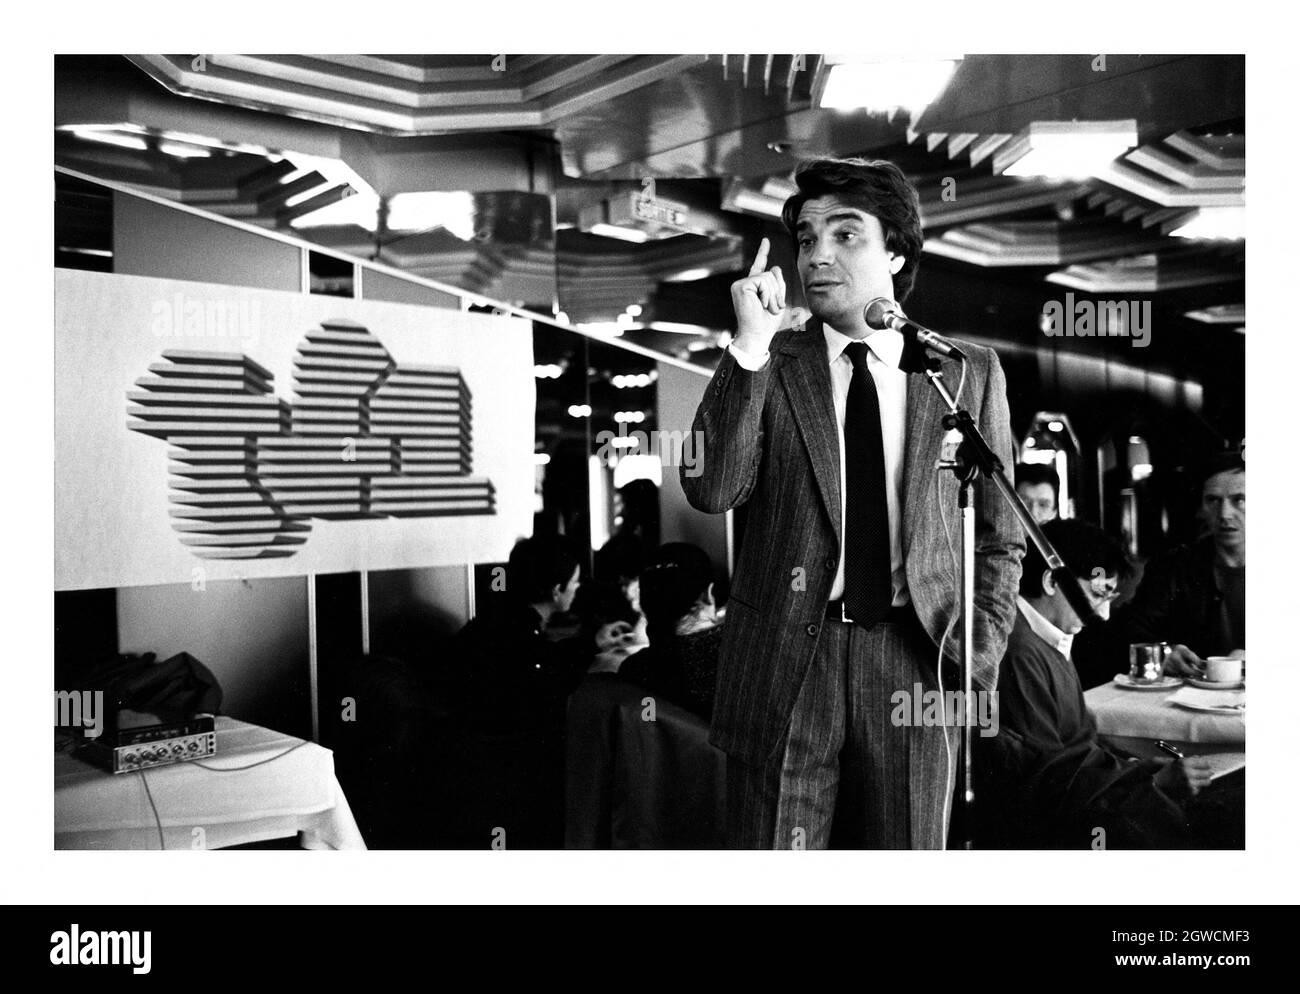 Datei-Foto vom 24. Februar 1986 der Pressekonferenz von Bernard Tapie für die Präsentation seines Programms 'Ambitionen' auf TF1. - der ehemalige französische Minister und skandalöse Tycoon Bernard Tapie, der ehemalige Eigentümer von Adidas und der ehemalige Vorsitzende von Olympique de Marseille, starb mit 78 Jahren. Foto von Pascal Baril/ABACAPRESS.COM Stockfoto